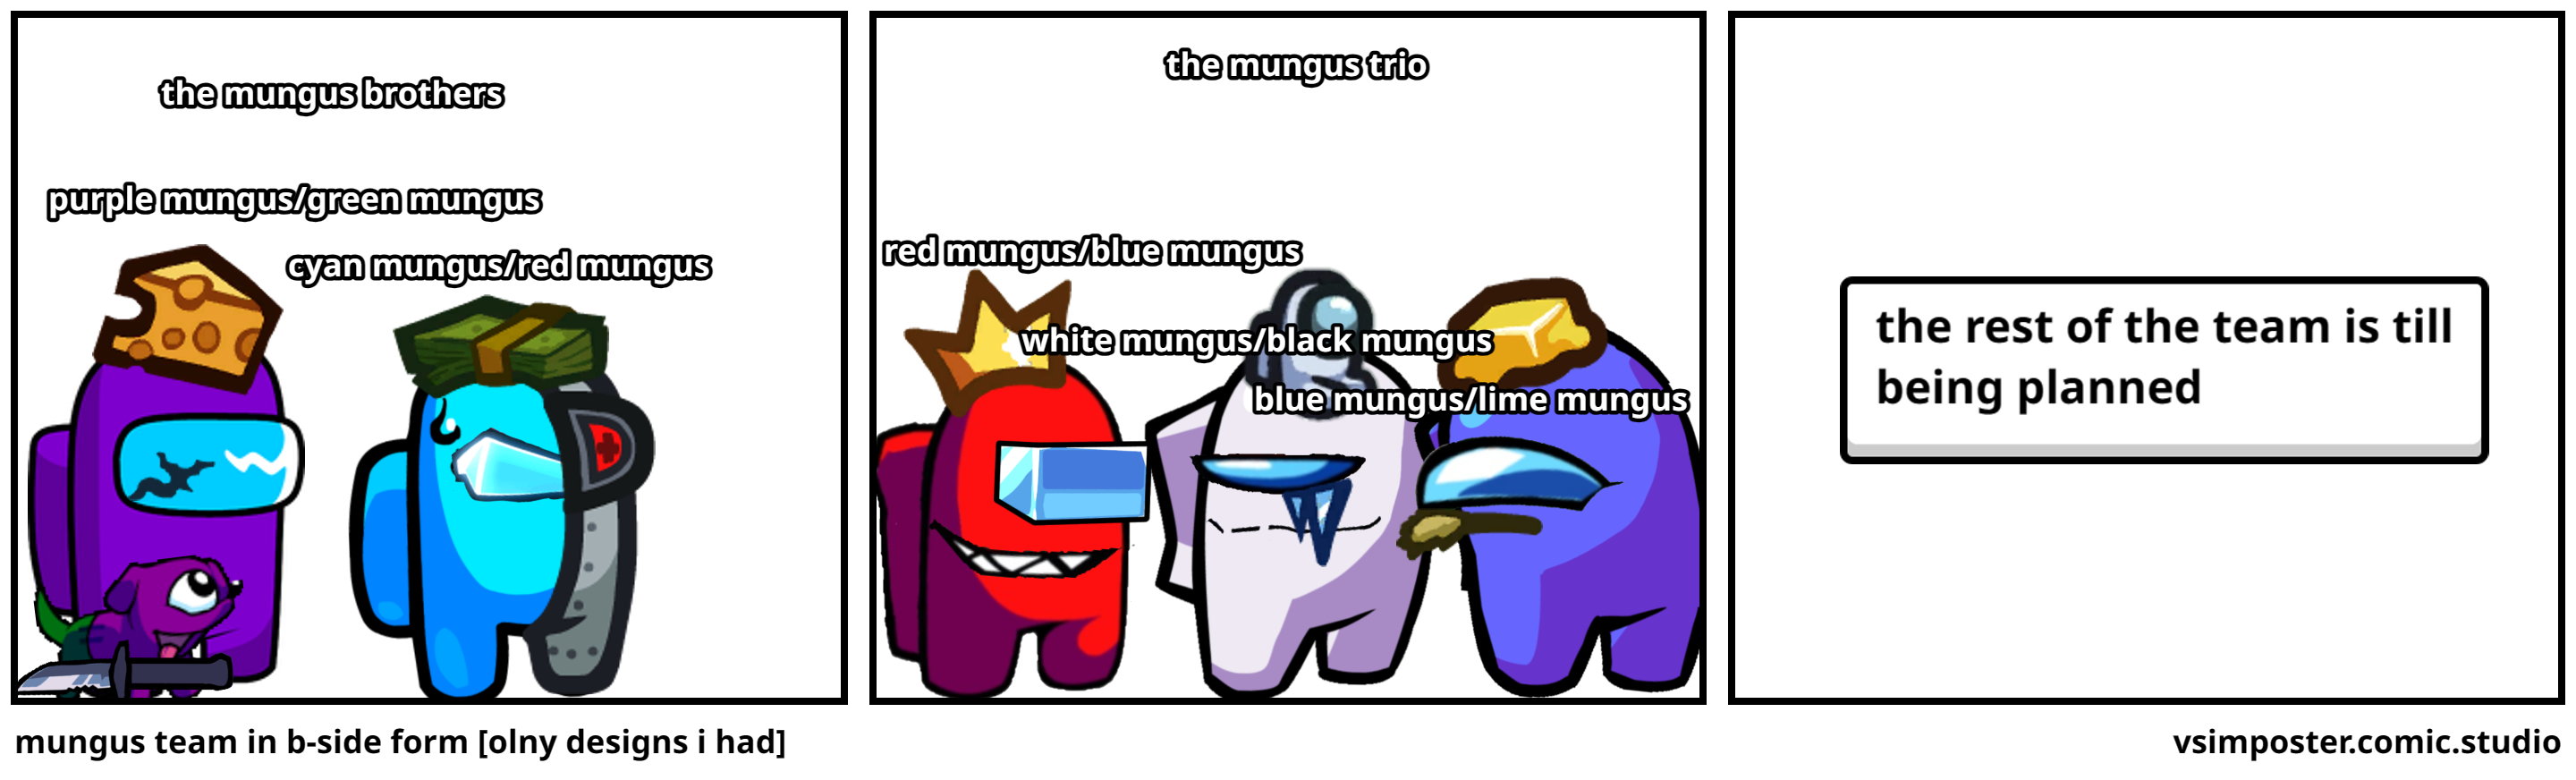 mungus team in b-side form [olny designs i had]